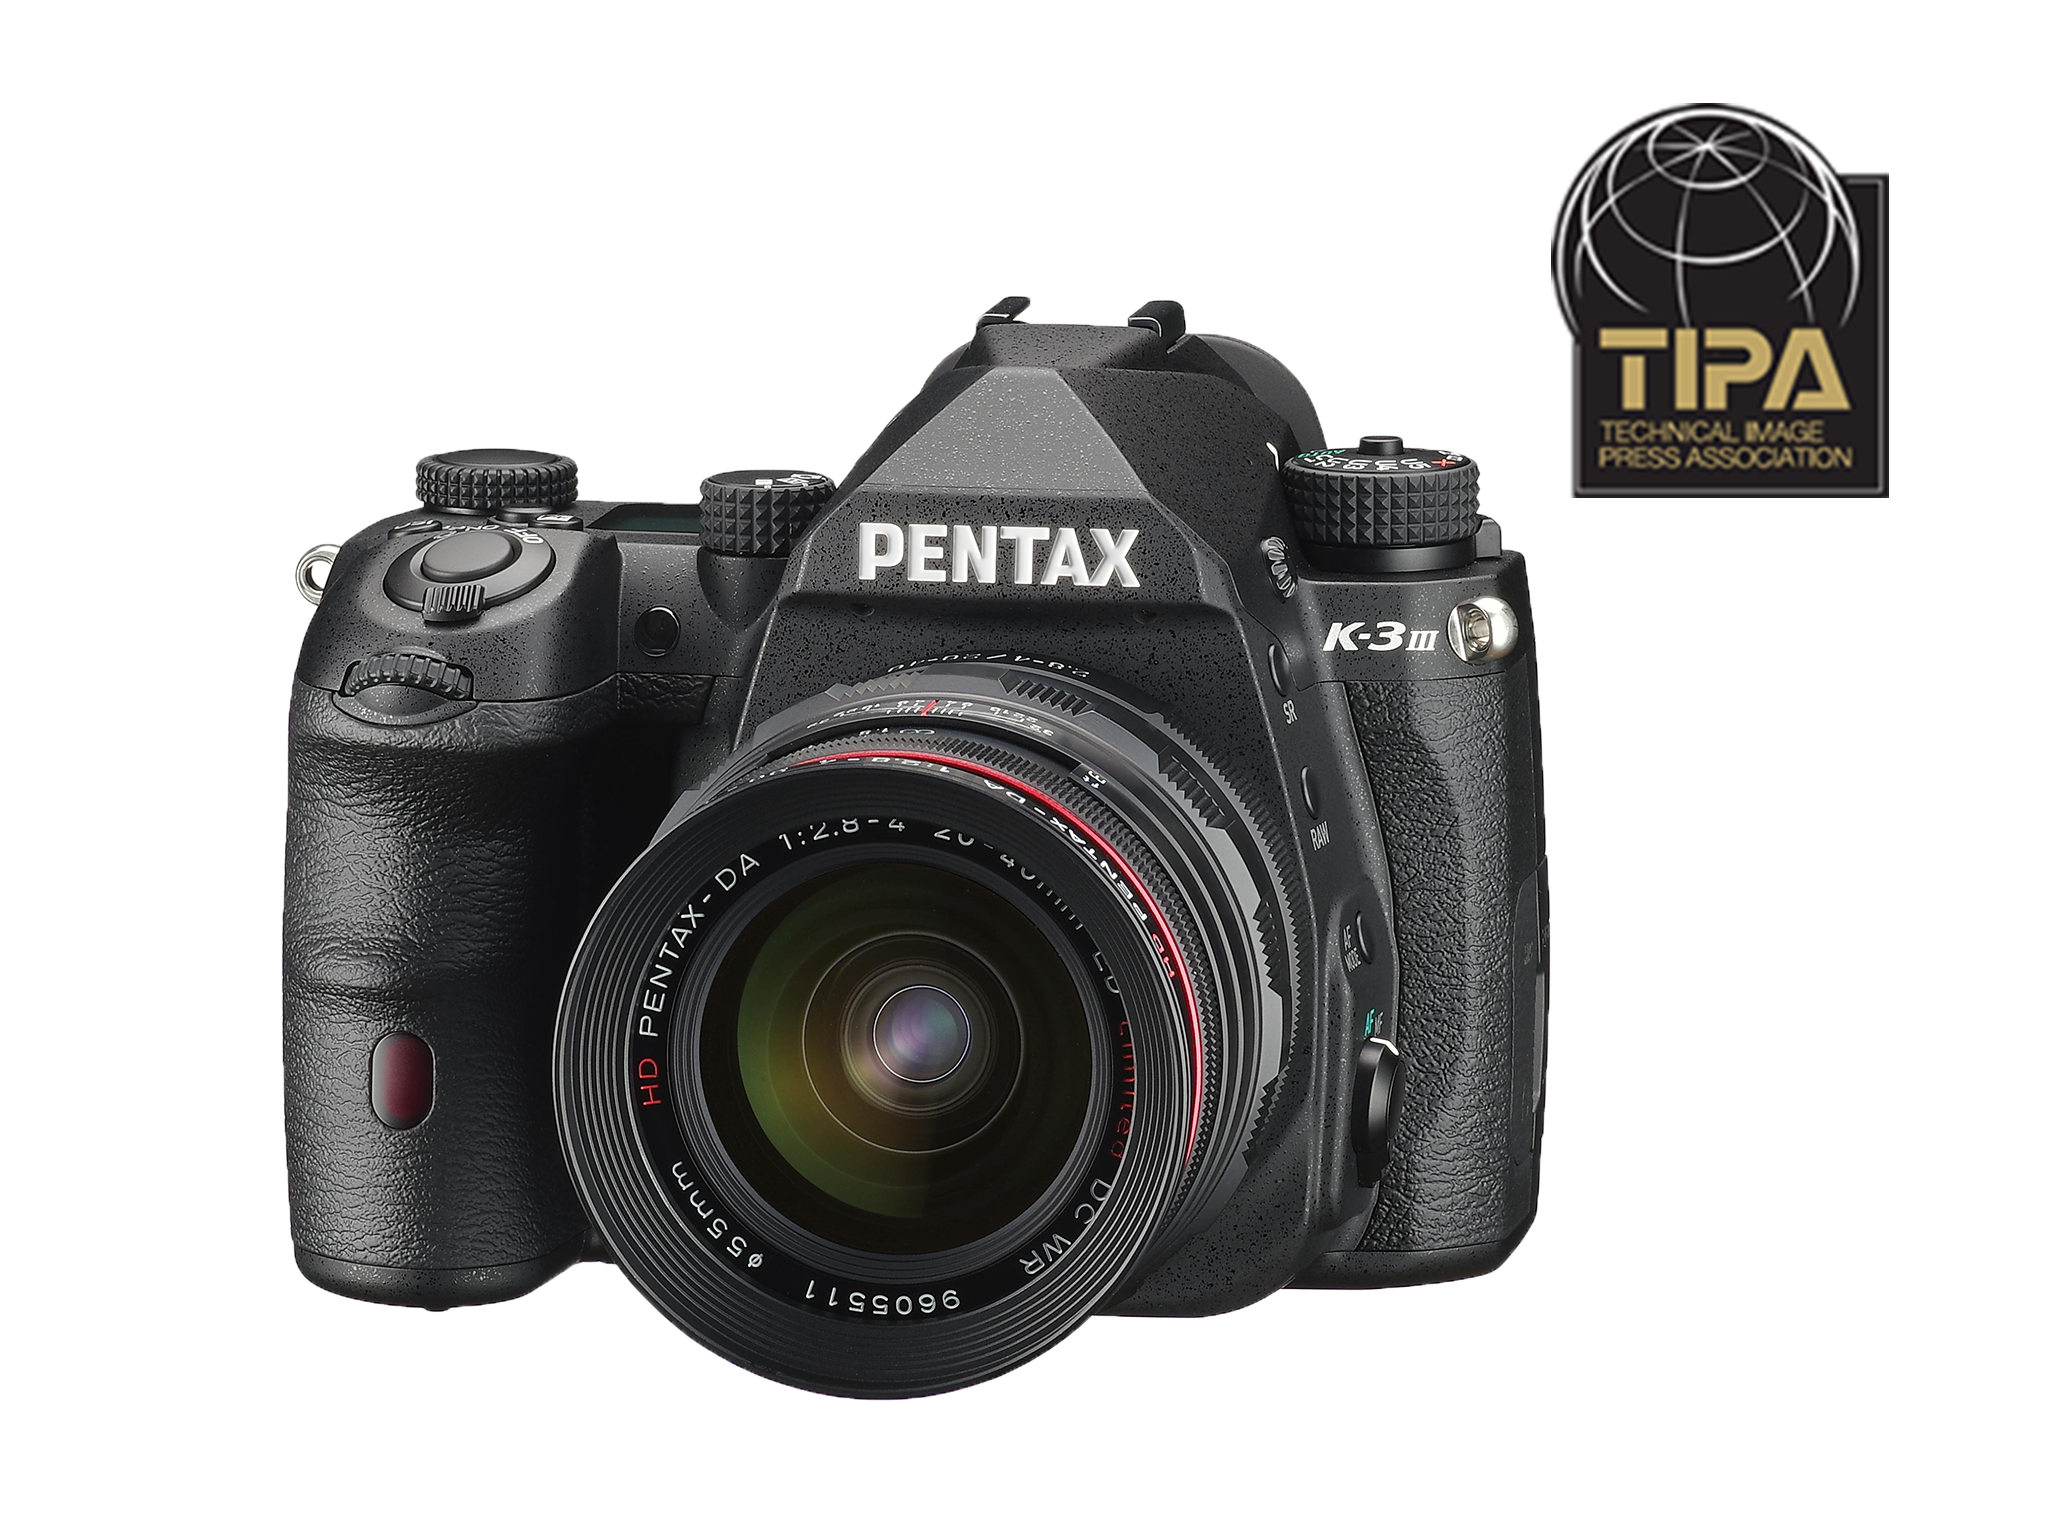 PENTAX K-3 III - Лучшая профессиональная камера формата APS-C по версии TIPA